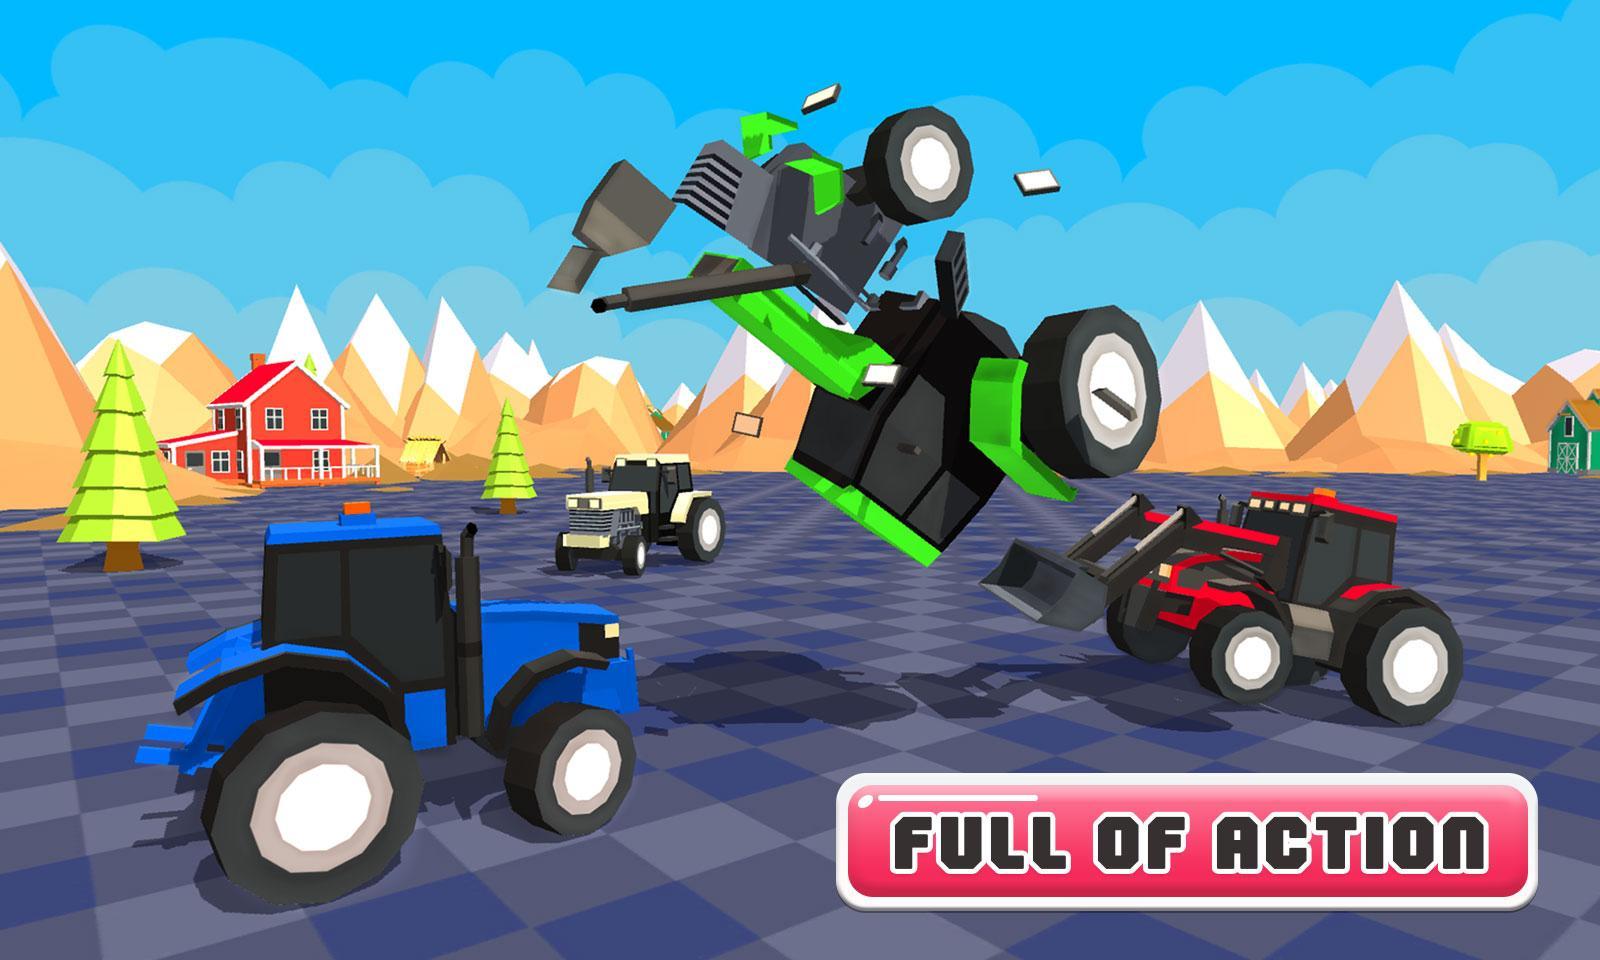 Screenshot 1 of Perang Final Pertempuran Traktor Mainan 1.0